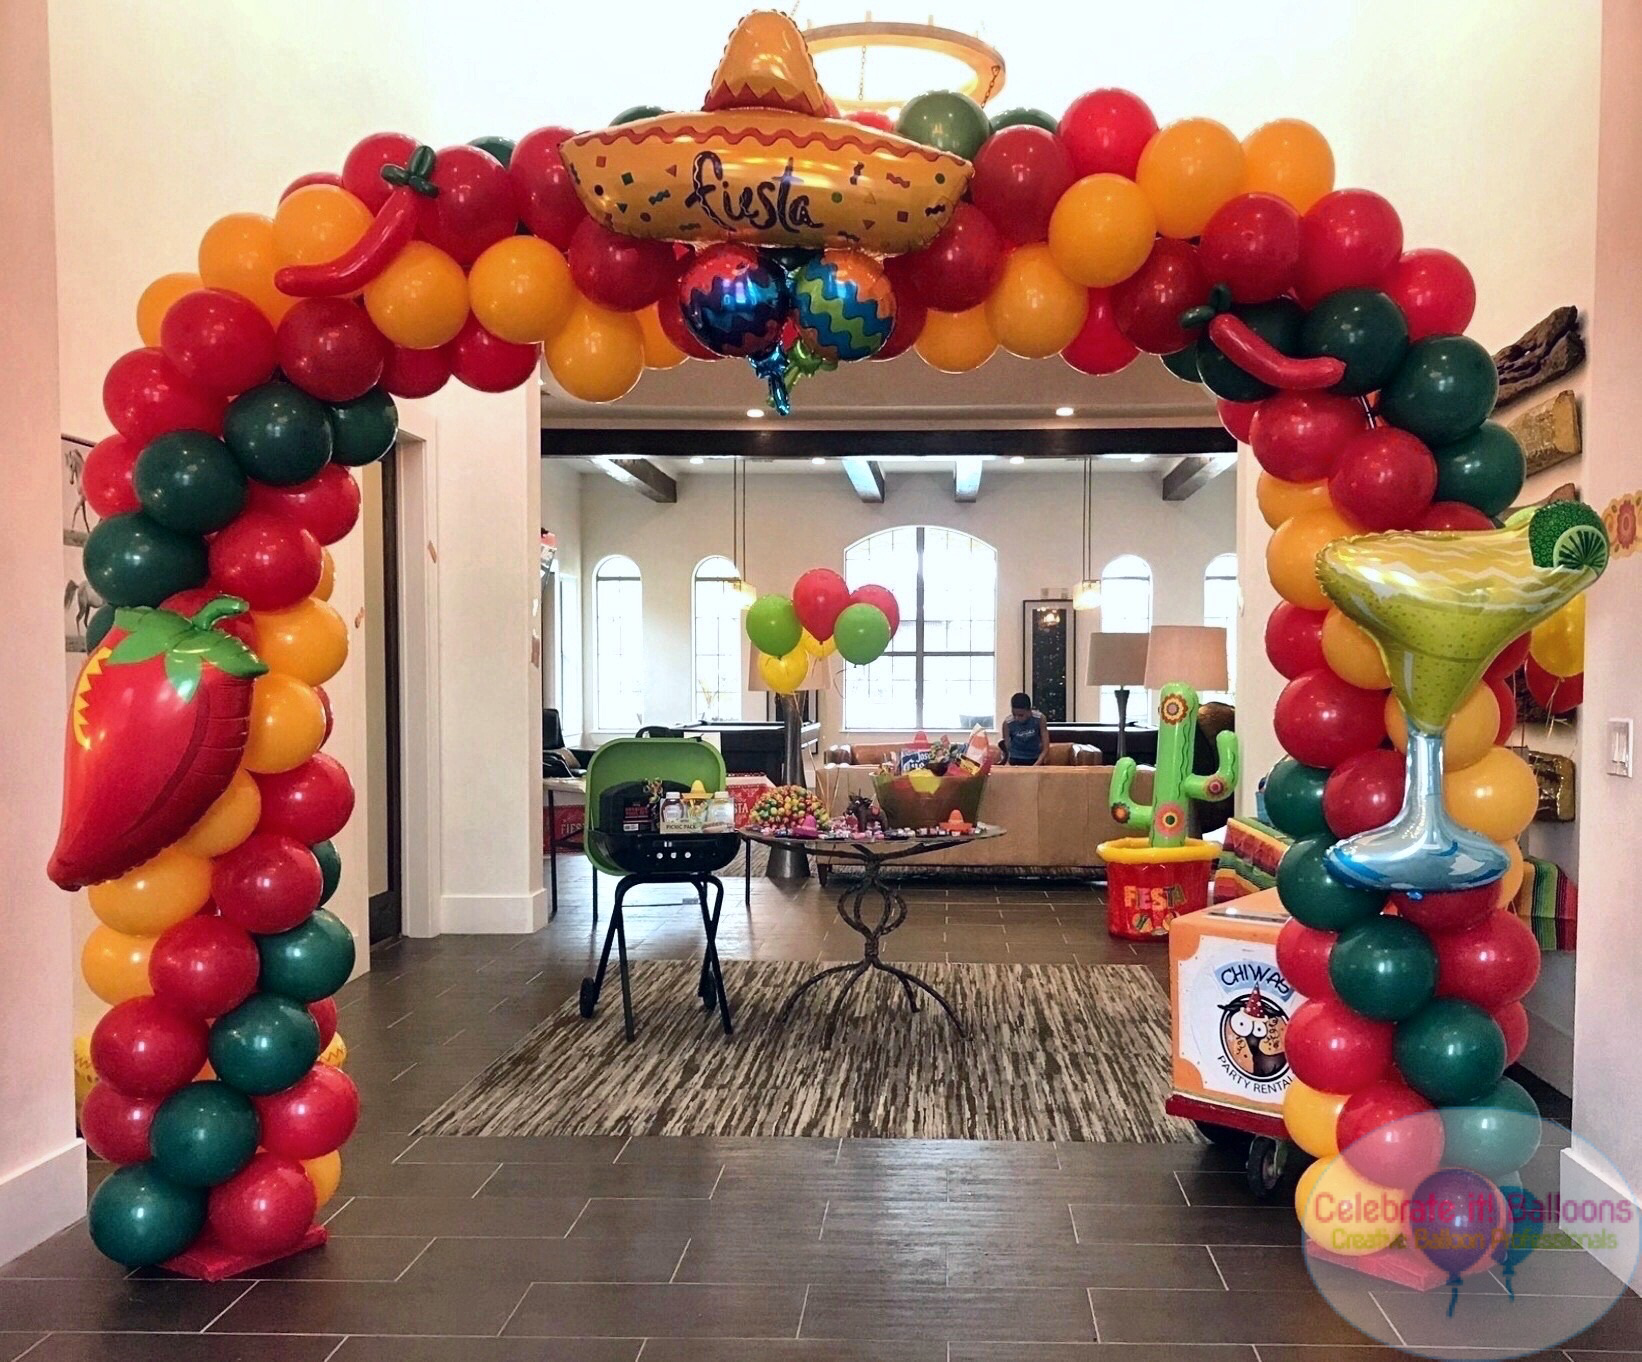 Balloon arch on a frame for Cinco de Mayo theme party